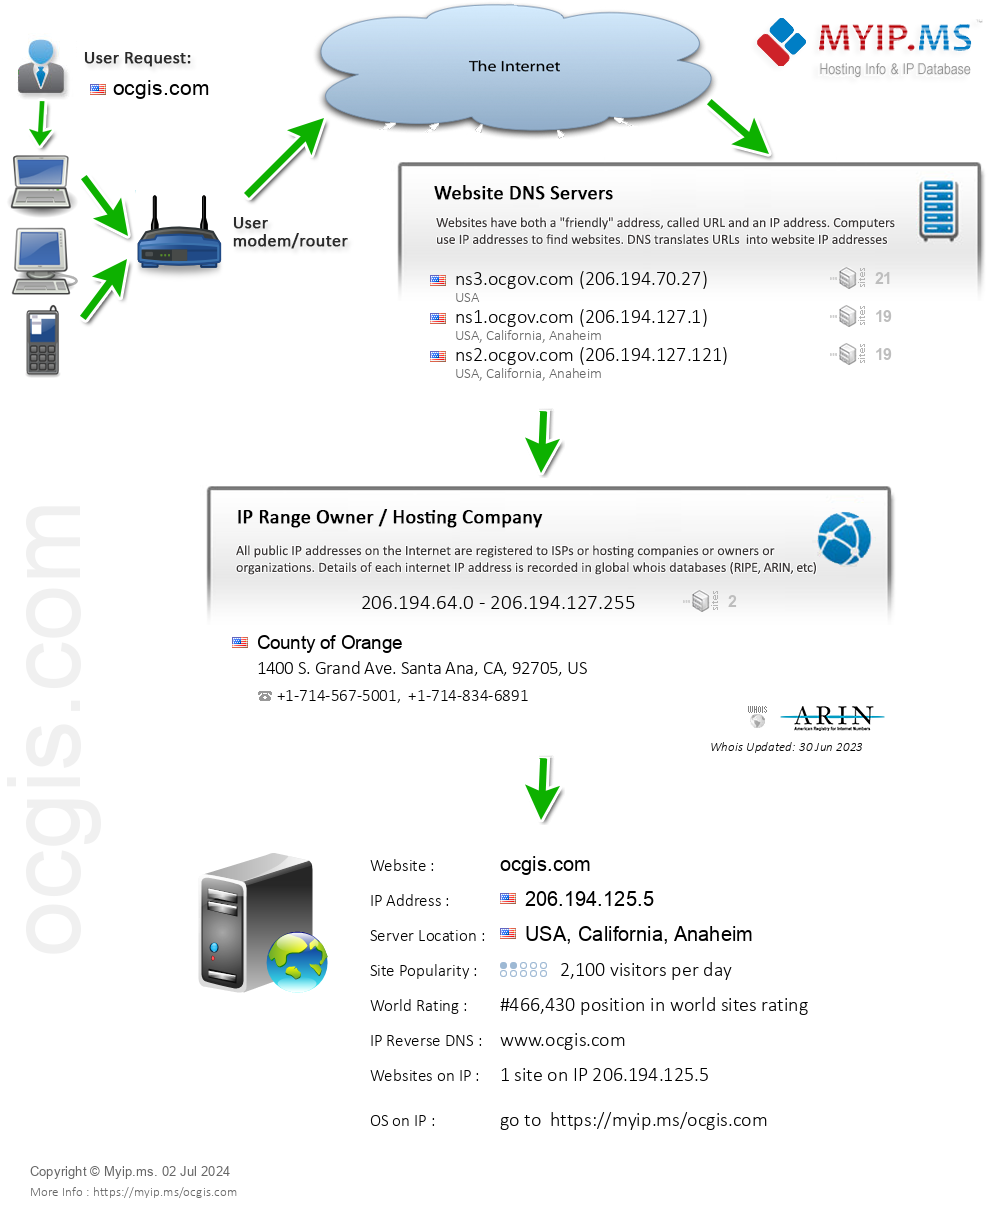 Ocgis.com - Website Hosting Visual IP Diagram